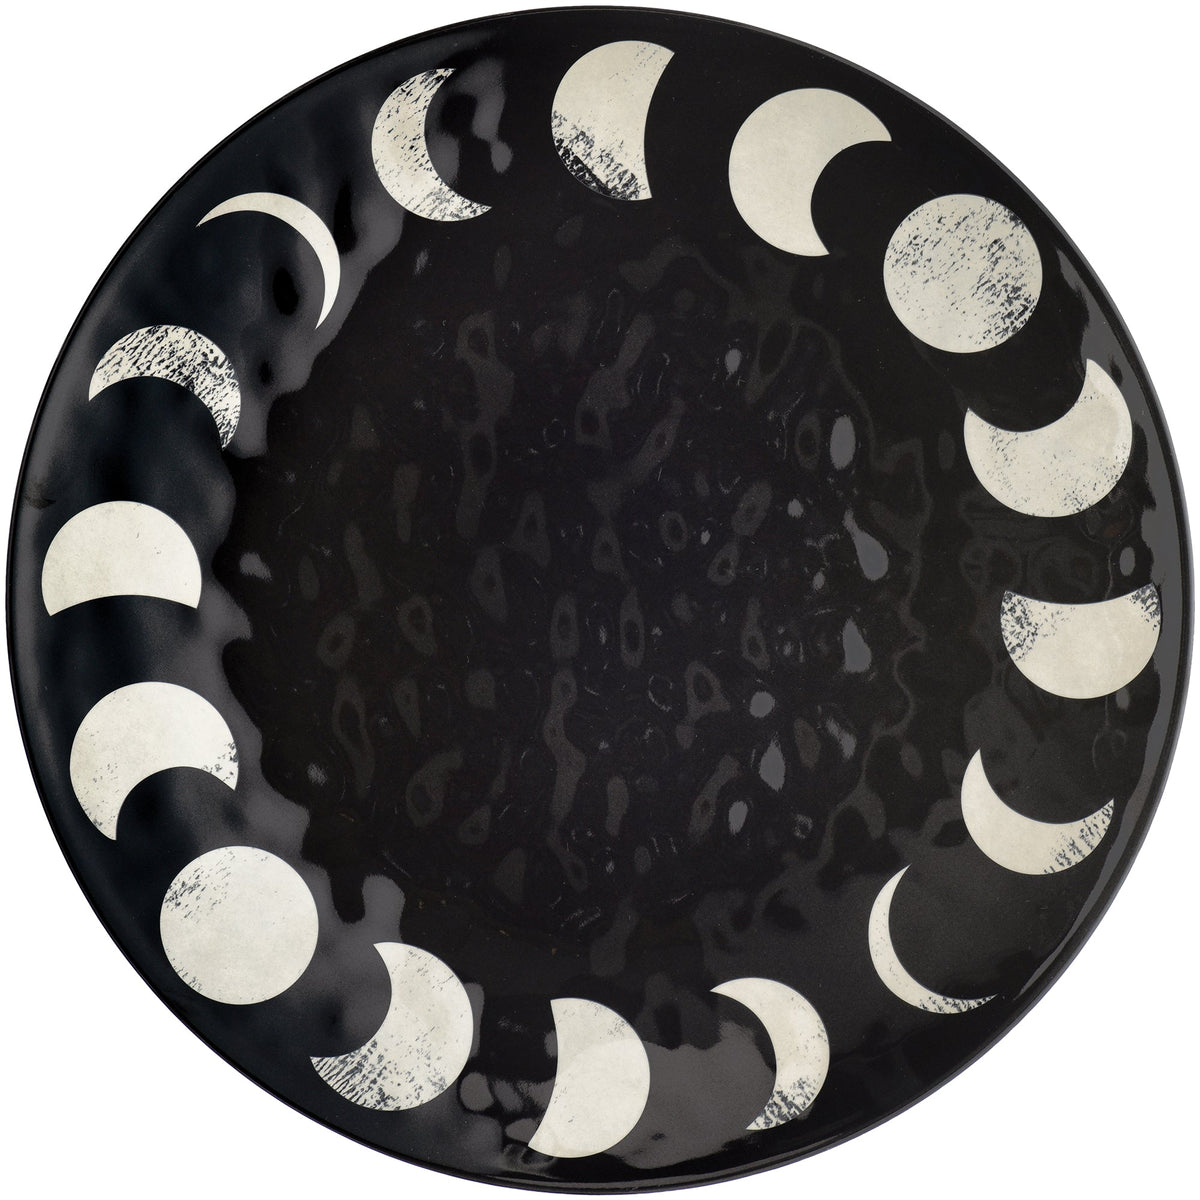 Black & White Moon Phases Textured Round 14" Melamine Platter